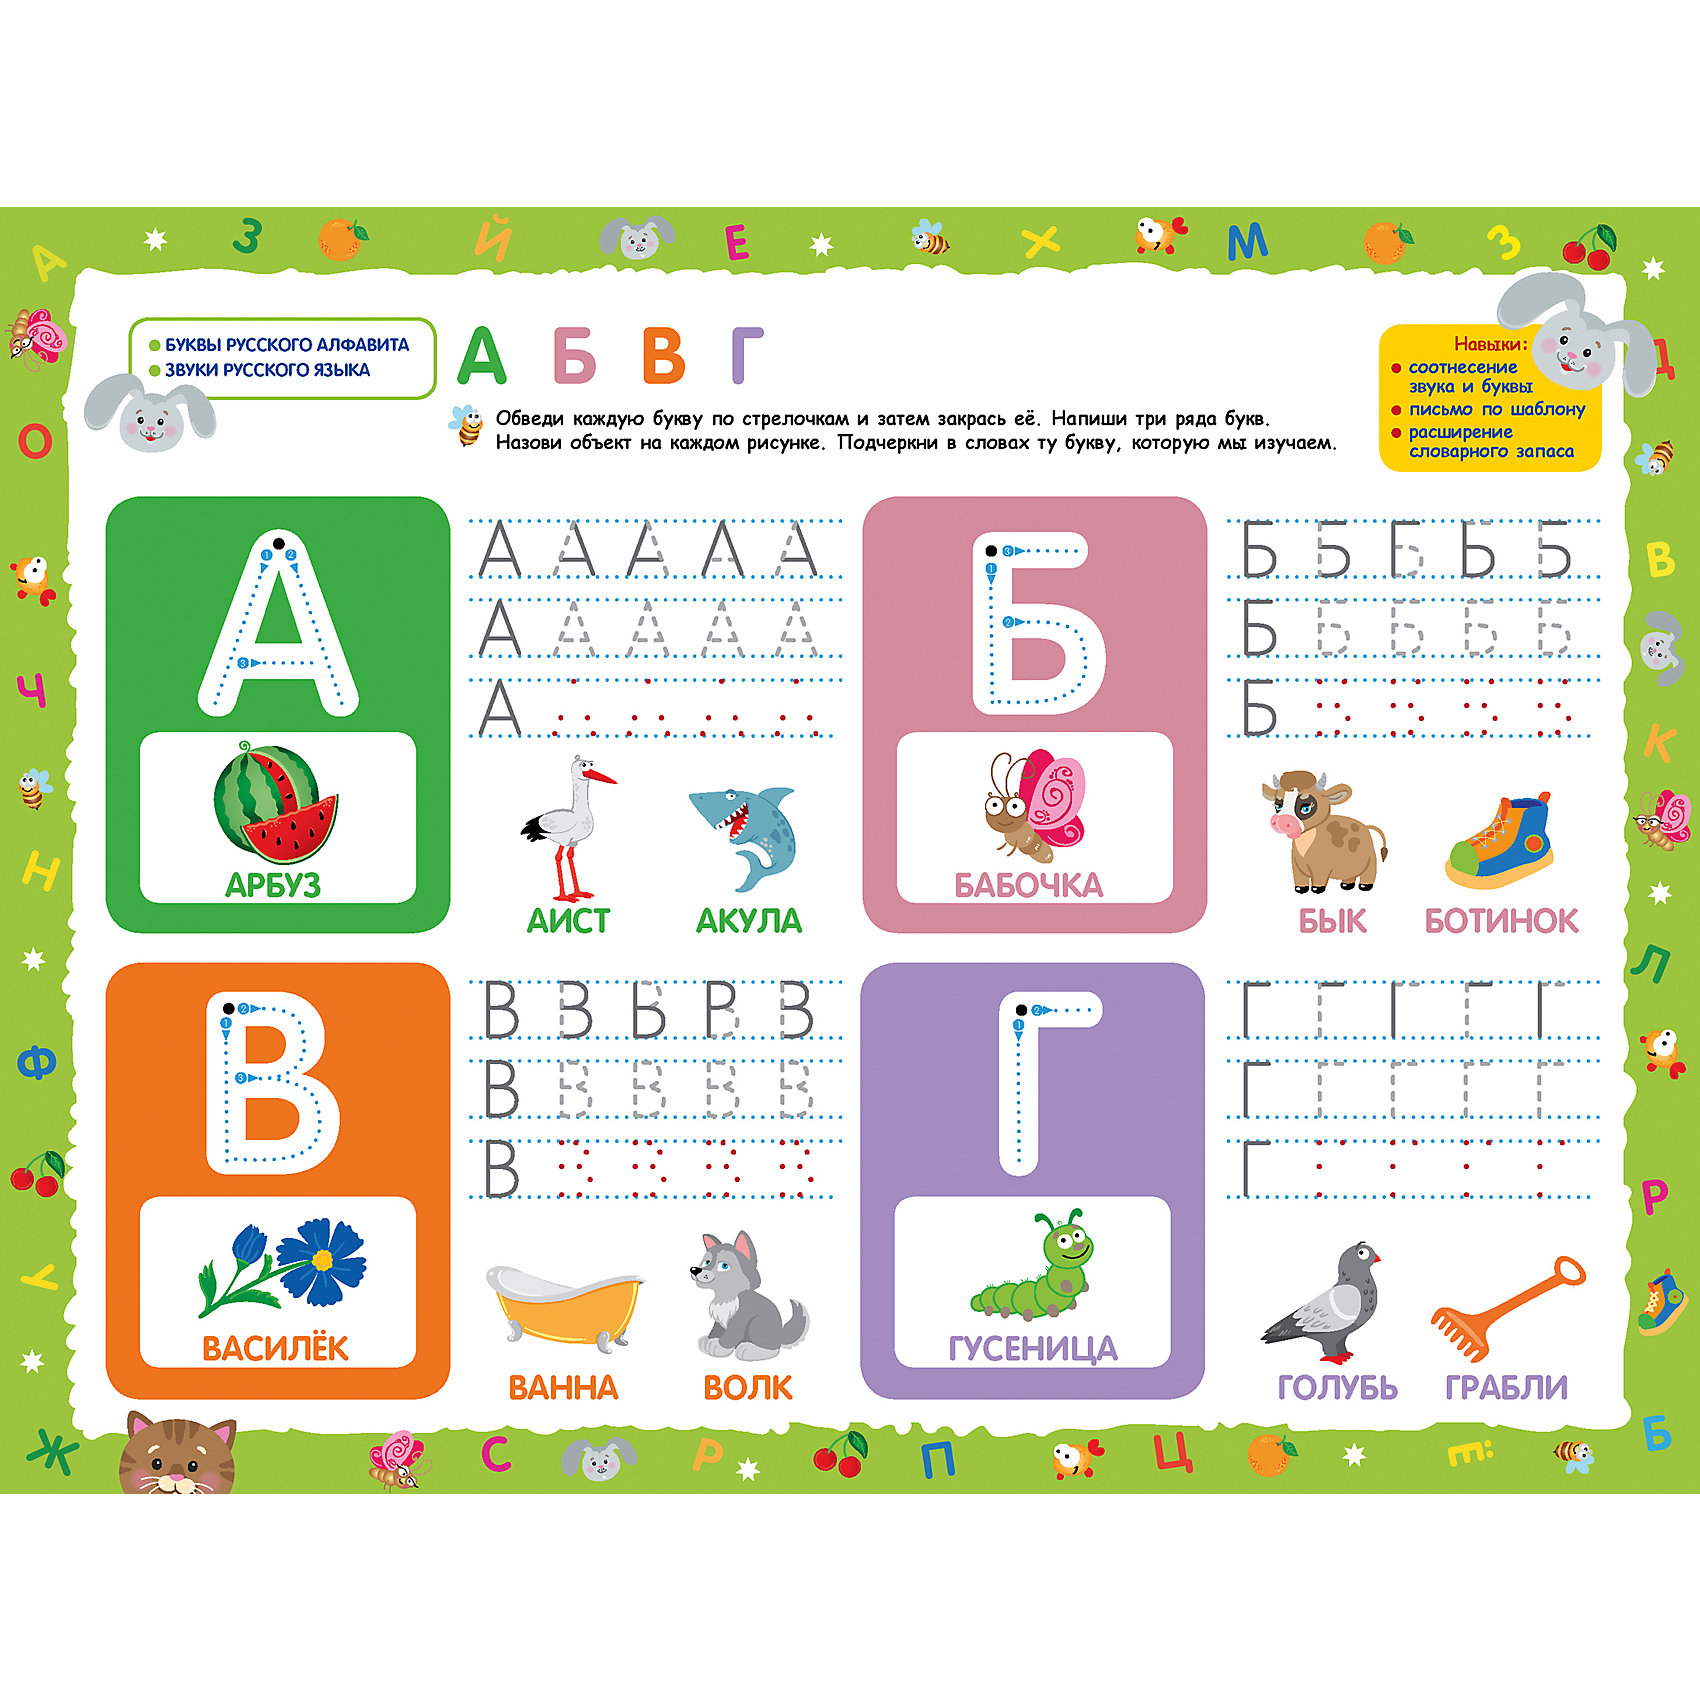 Алфавит для детей 3 4 лет учим. Учим буквы. Изучение алфавита. Изучаем алфавит. Изучение буквы а в игровой форме.